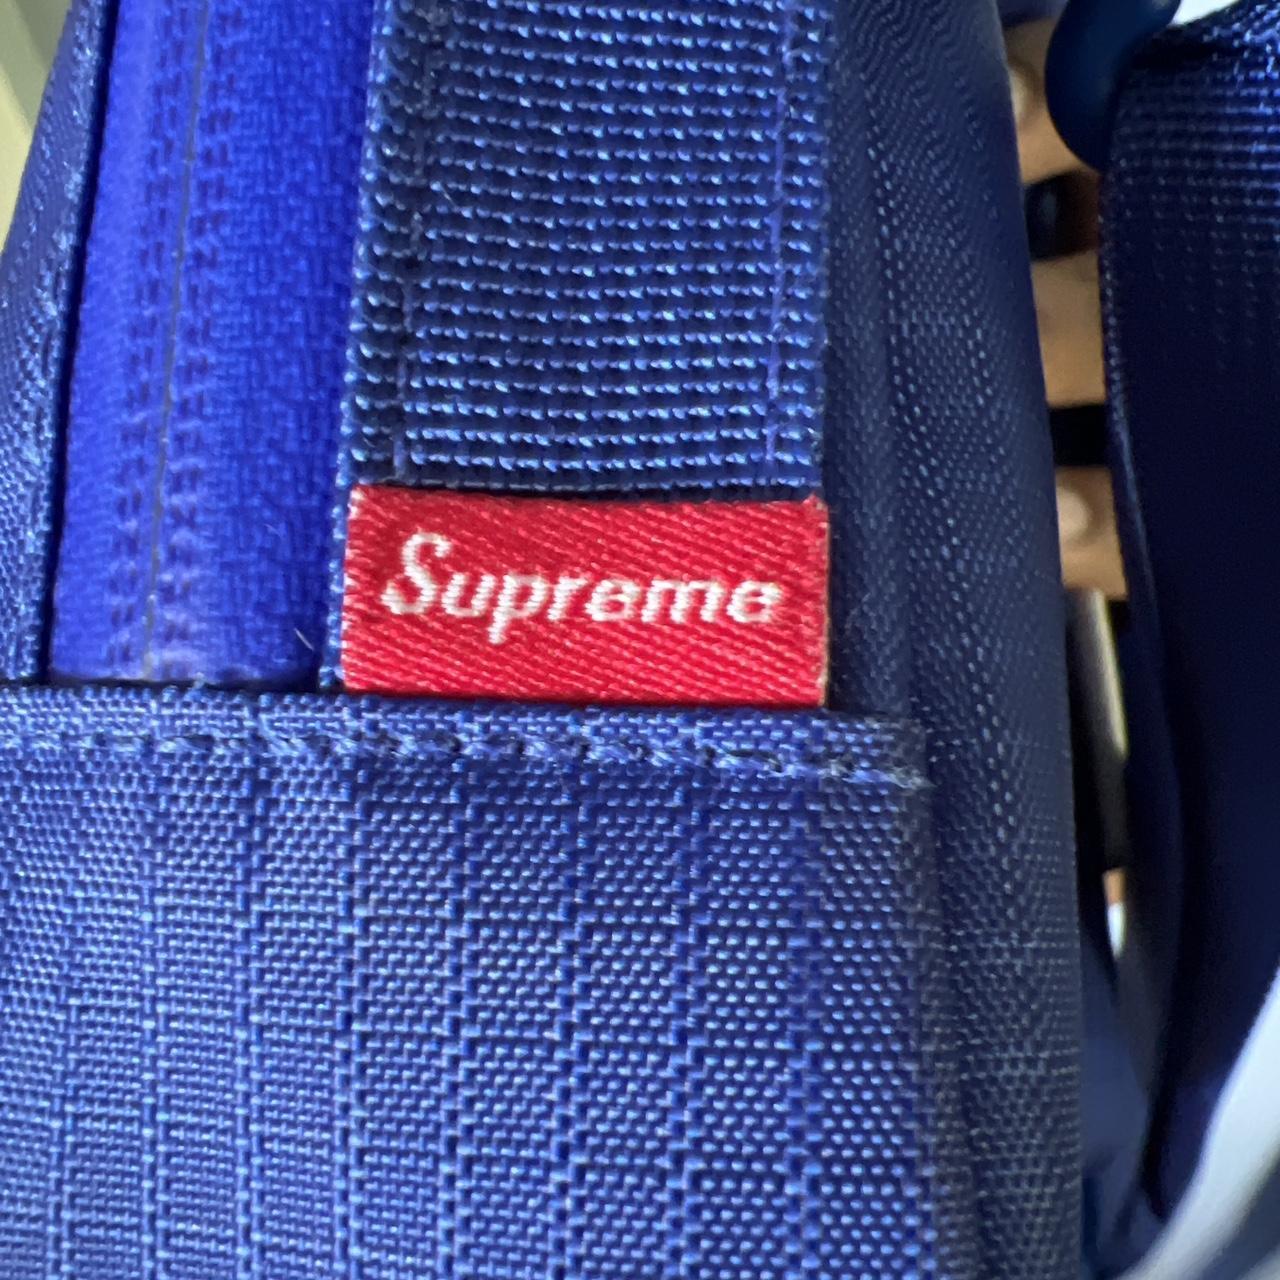 Supreme, Bags, Blue Supreme Bag